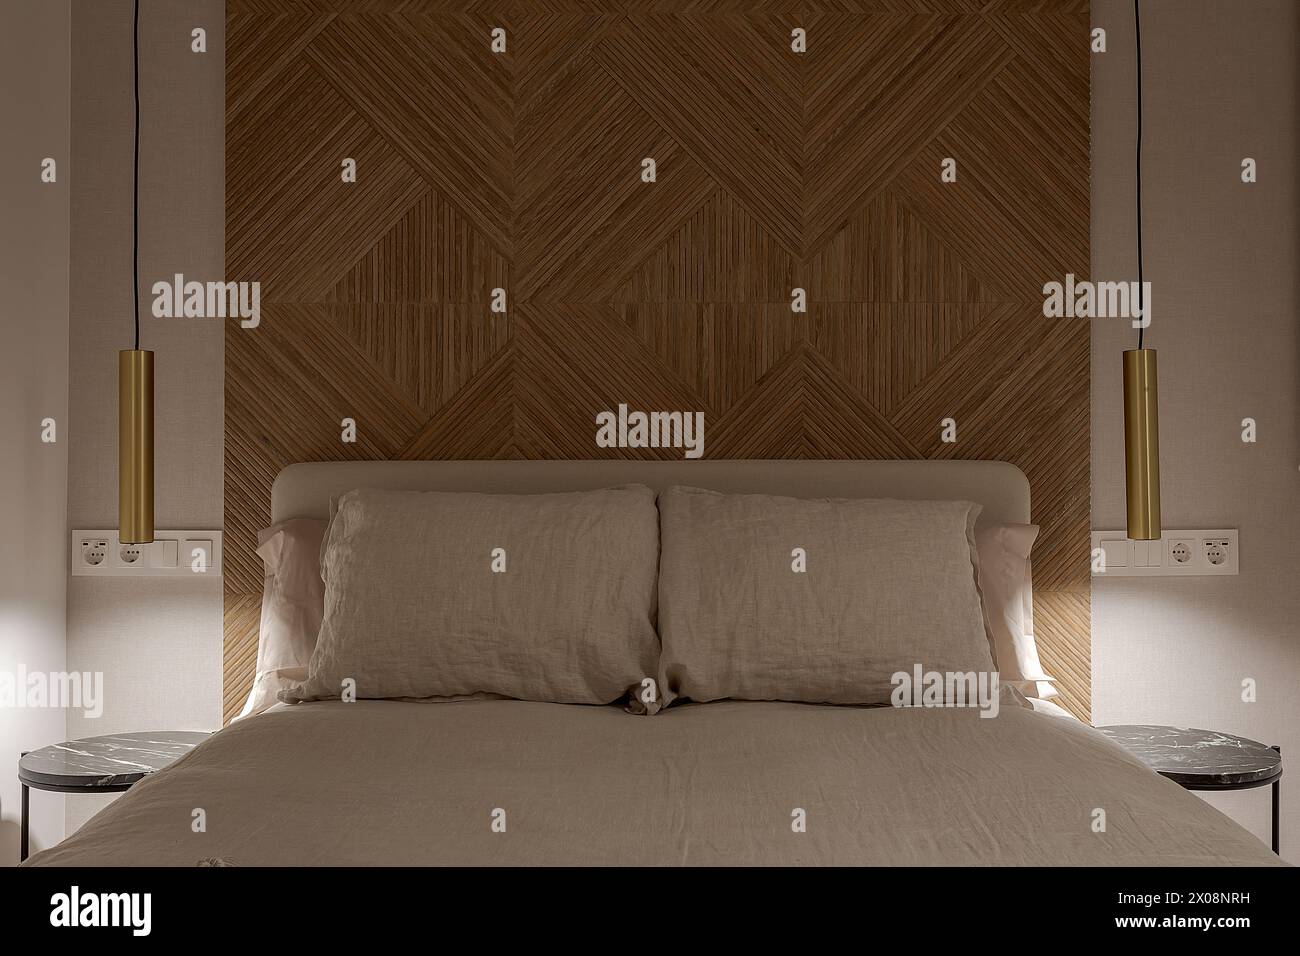 Una camera da letto accogliente ed elegante con enfasi su una suggestiva testata in legno caratterizzata da un motivo a spina di pesce, fiancheggiata da moderne luci a incandescenza Foto Stock